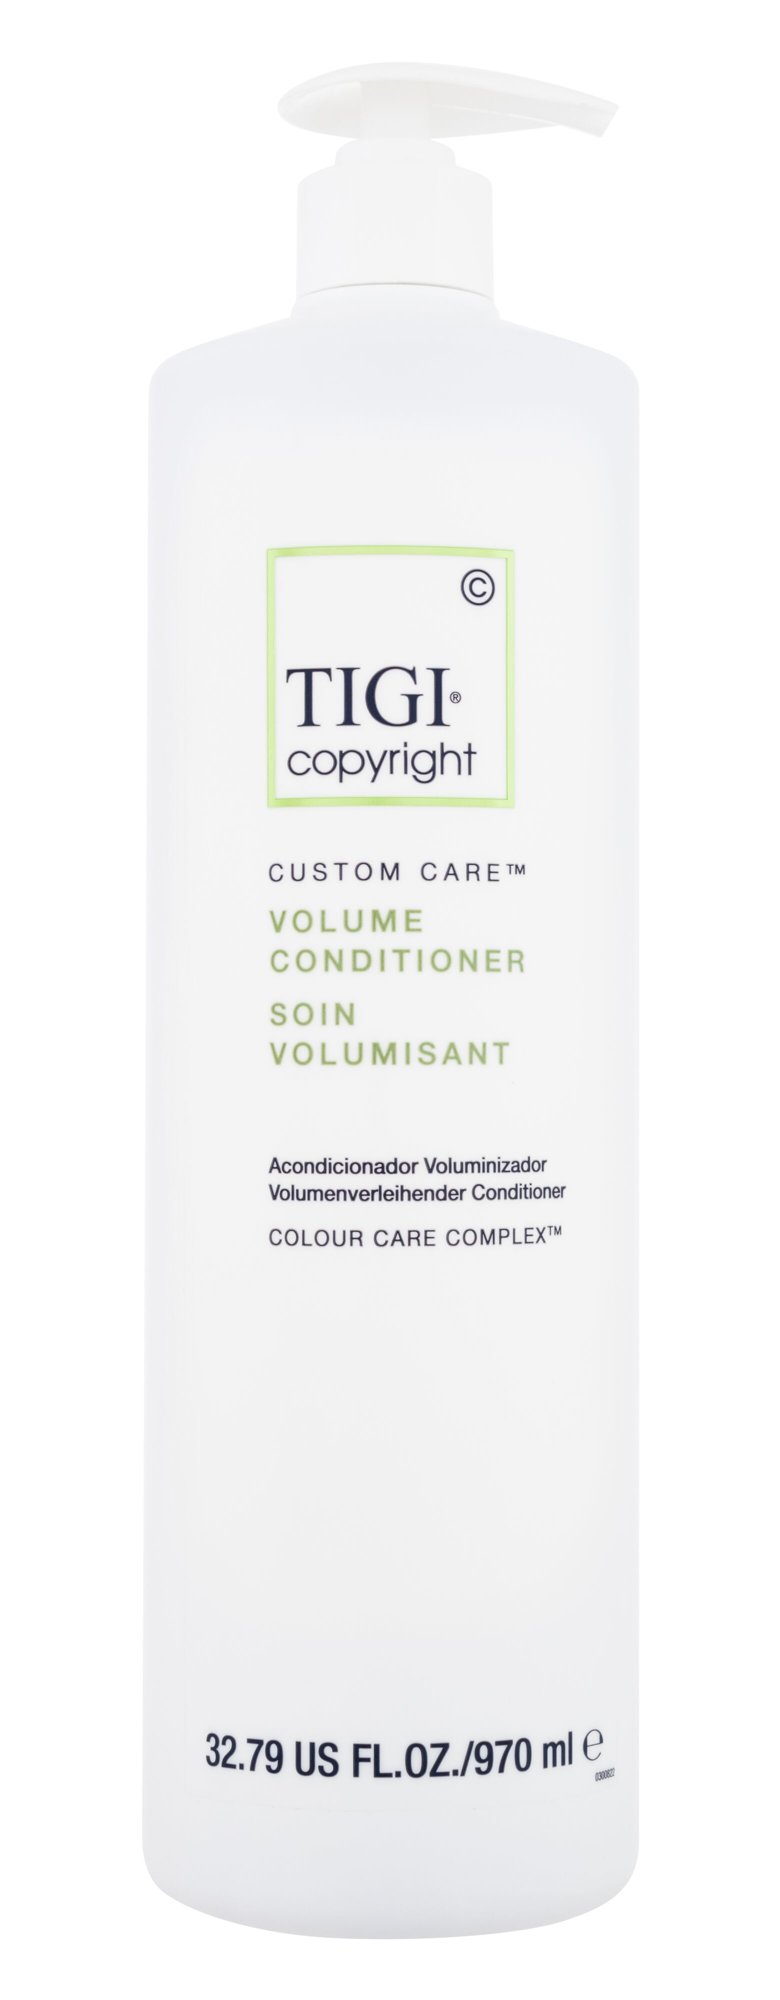 Tigi Copyright Custom Care Volume Conditioner 970ml kondicionierius